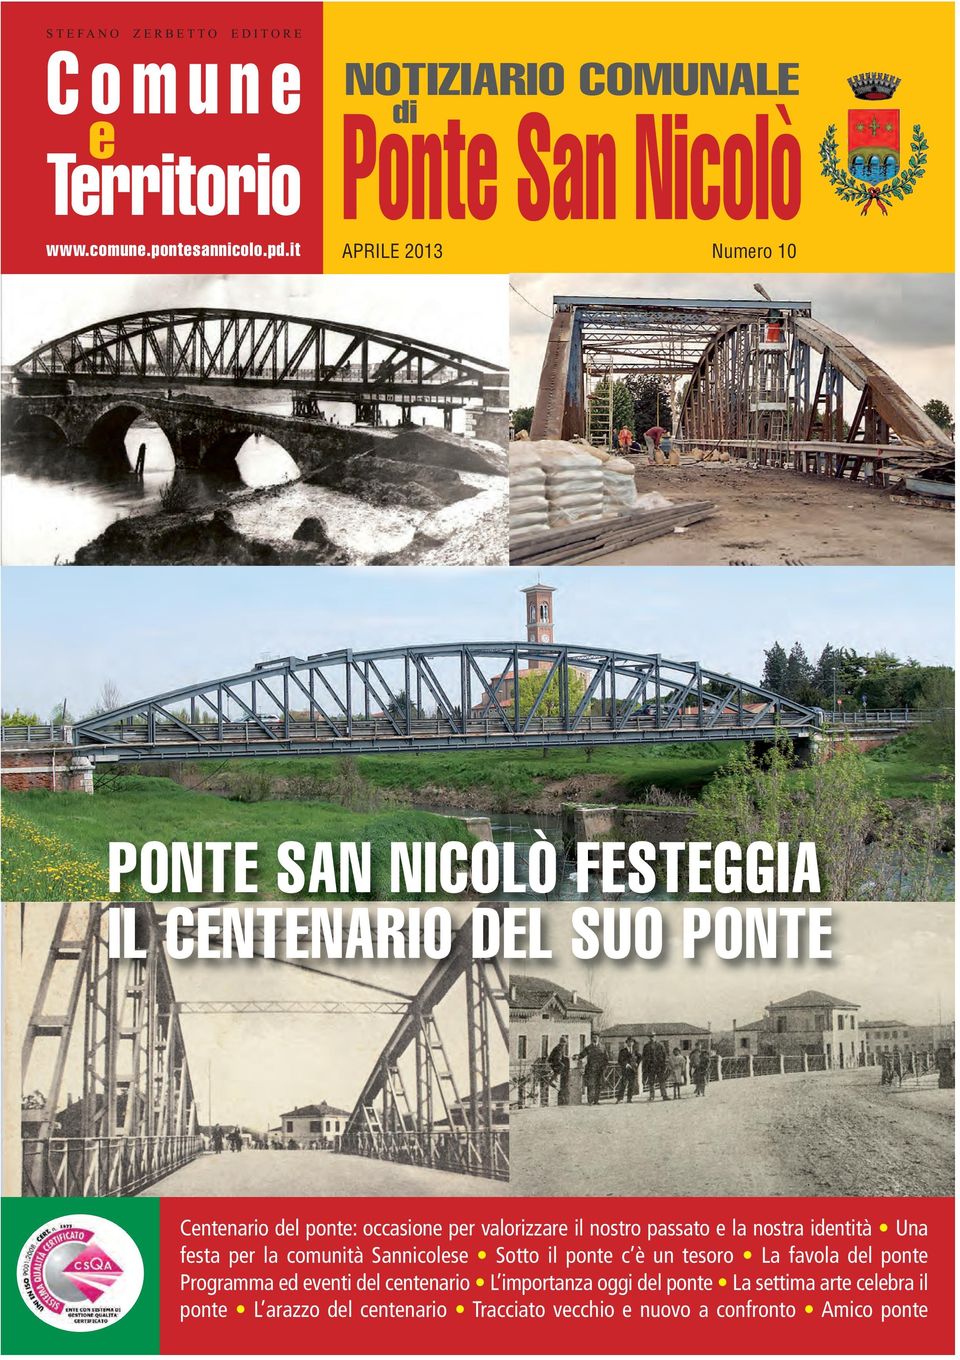 nostro passato e la nostra identità Una festa per la comunità Sannicolese Sotto il ponte c è un tesoro La favola del ponte Programma